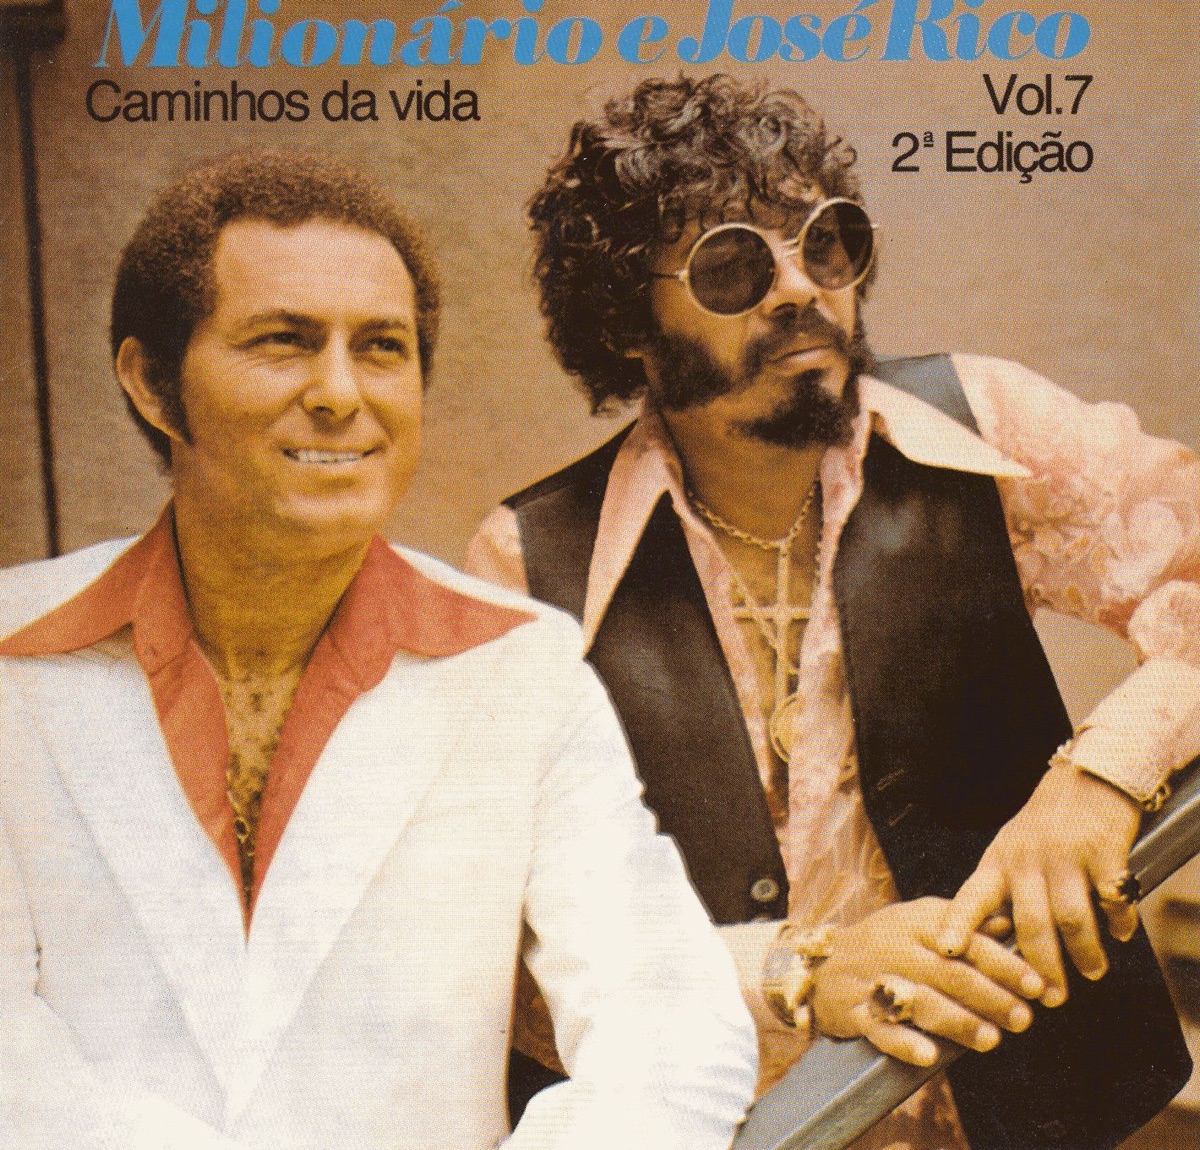 Decida - Album by Milionário & José Rico